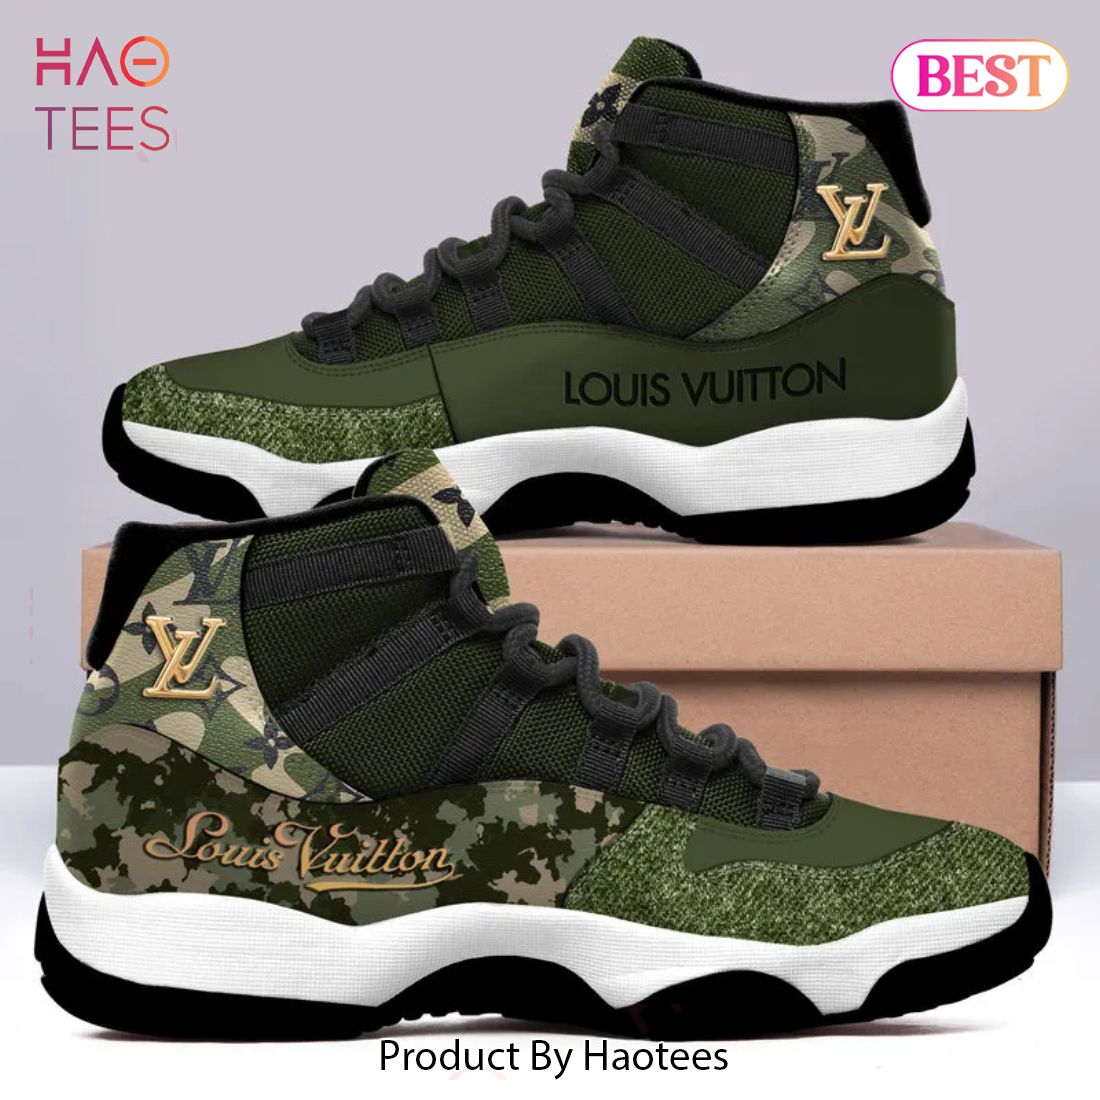 [NEW FASHION] Louis Vuitton Green Camo Air Jordan 11 Sneakers Shoes Hot 2023 LV Gifts For Men Women